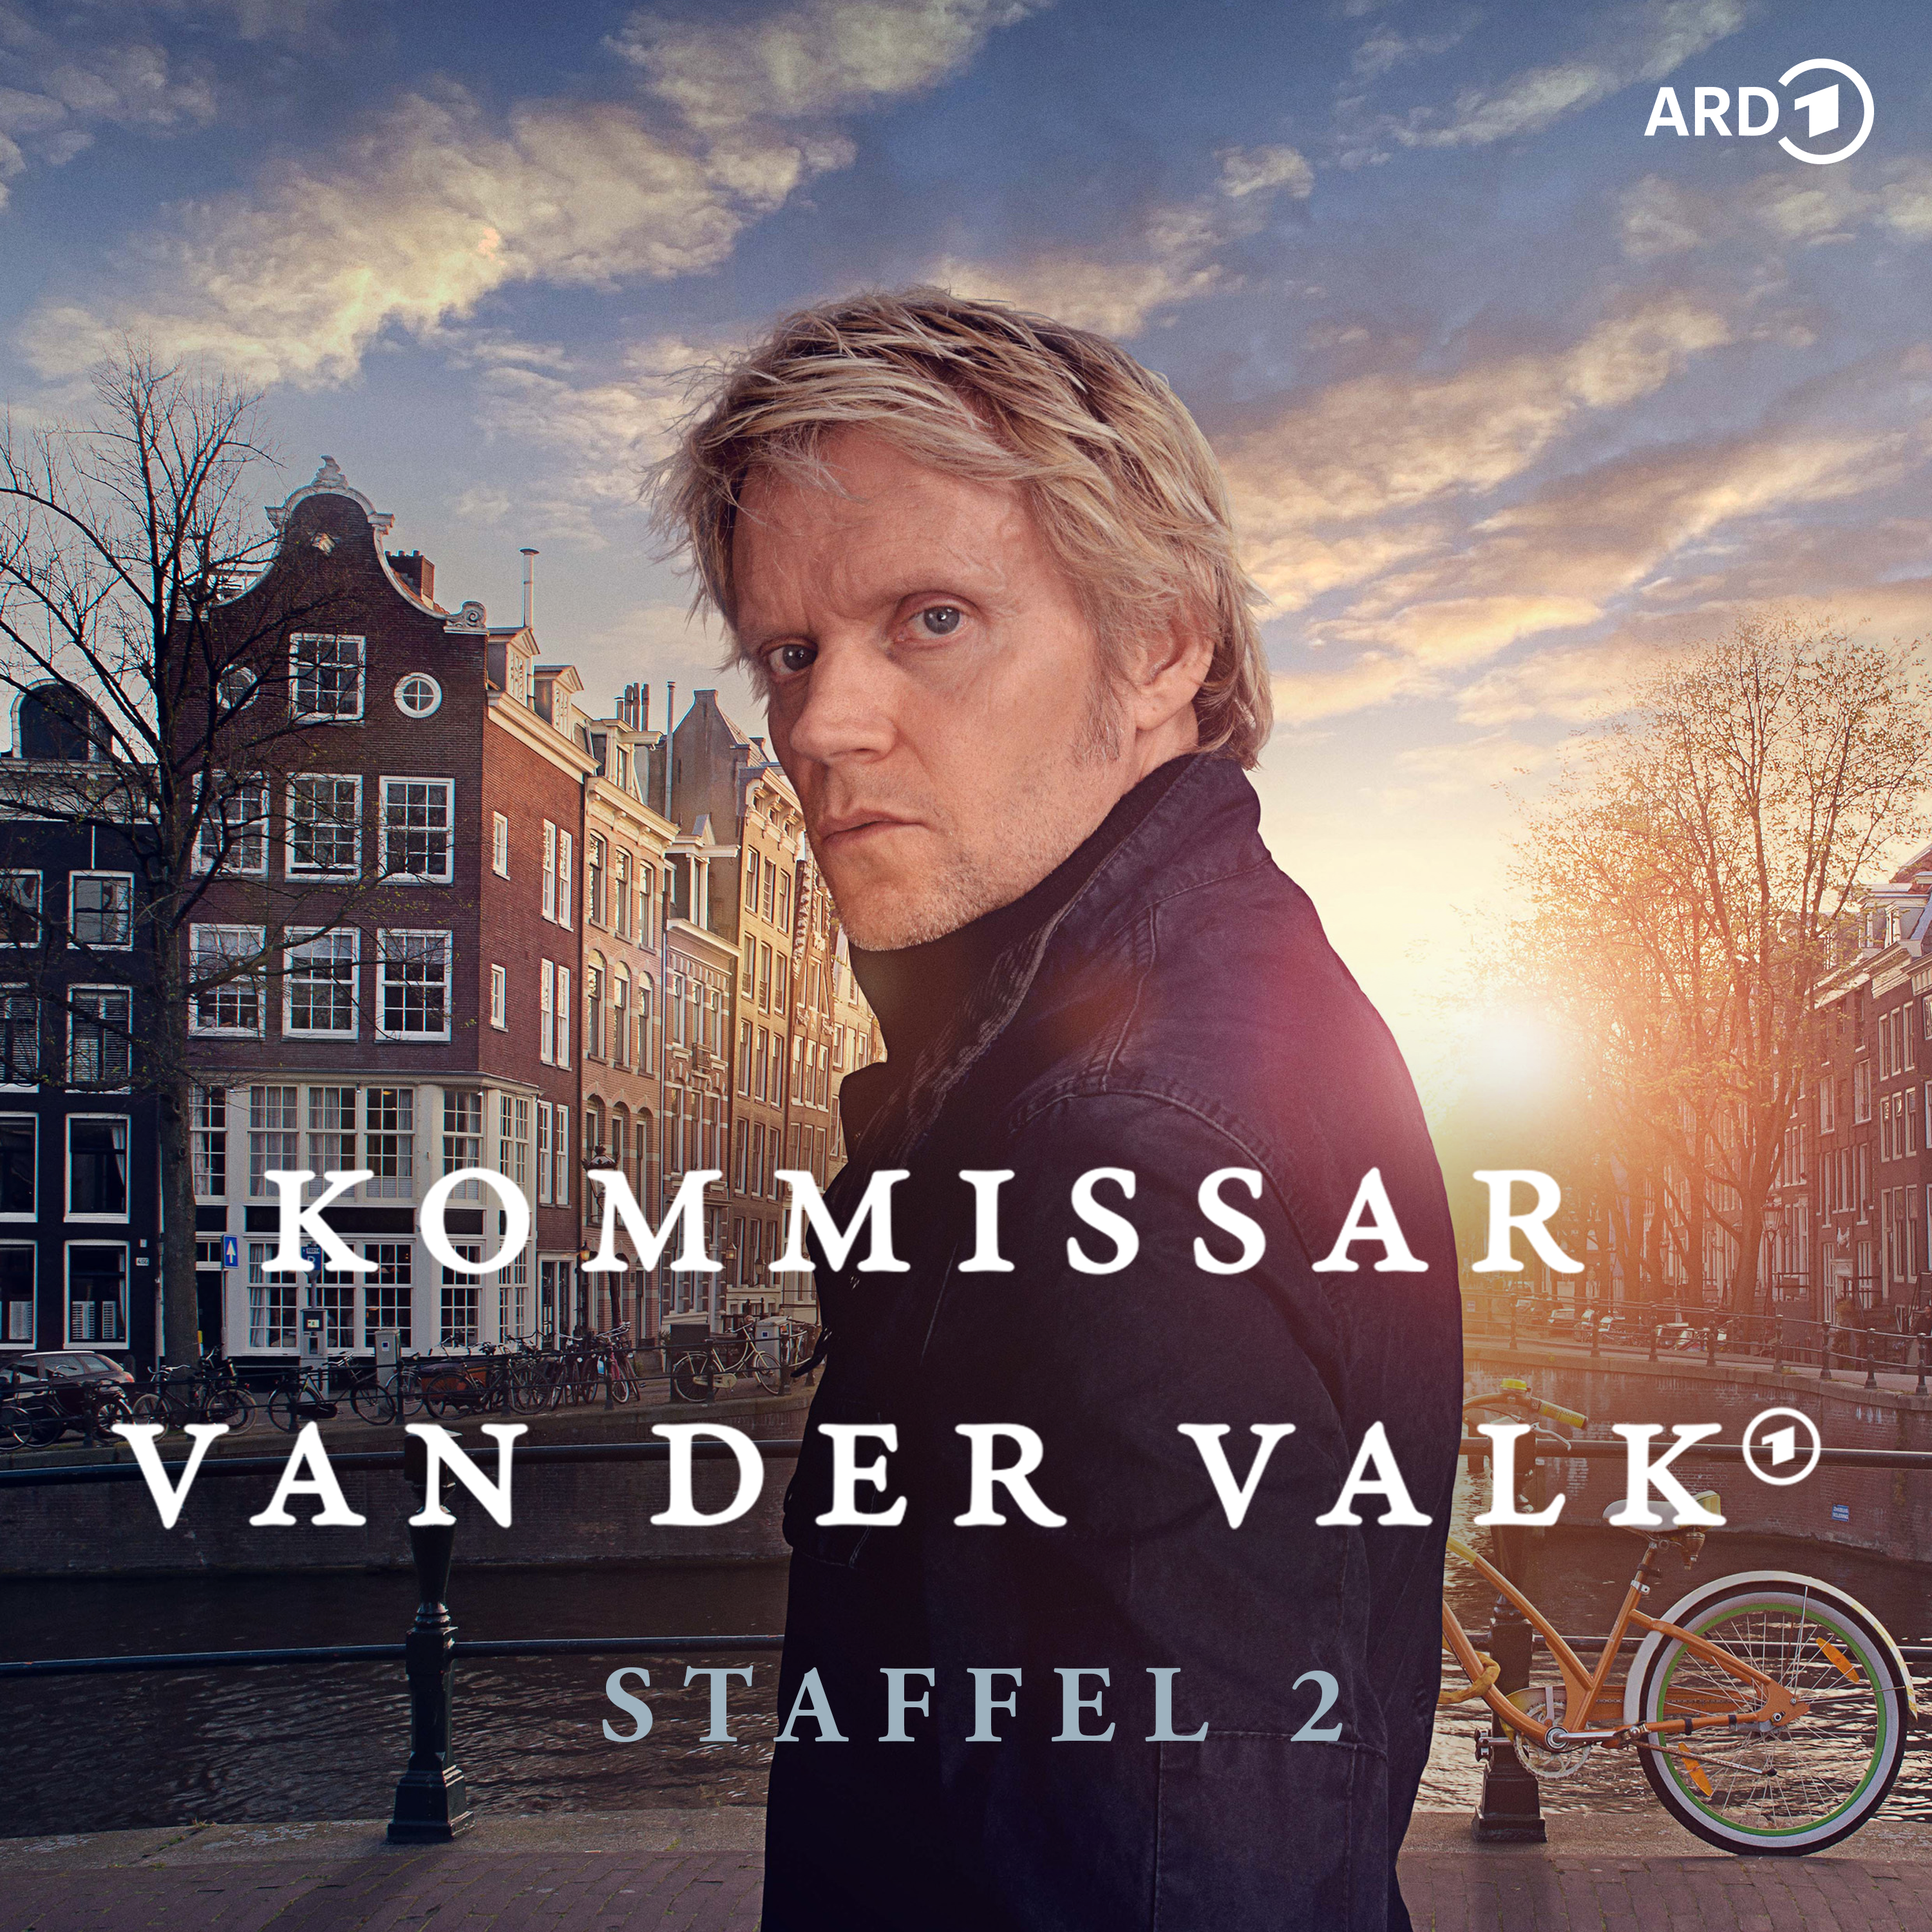 Kommissar Van der Valk (Staffel 2)